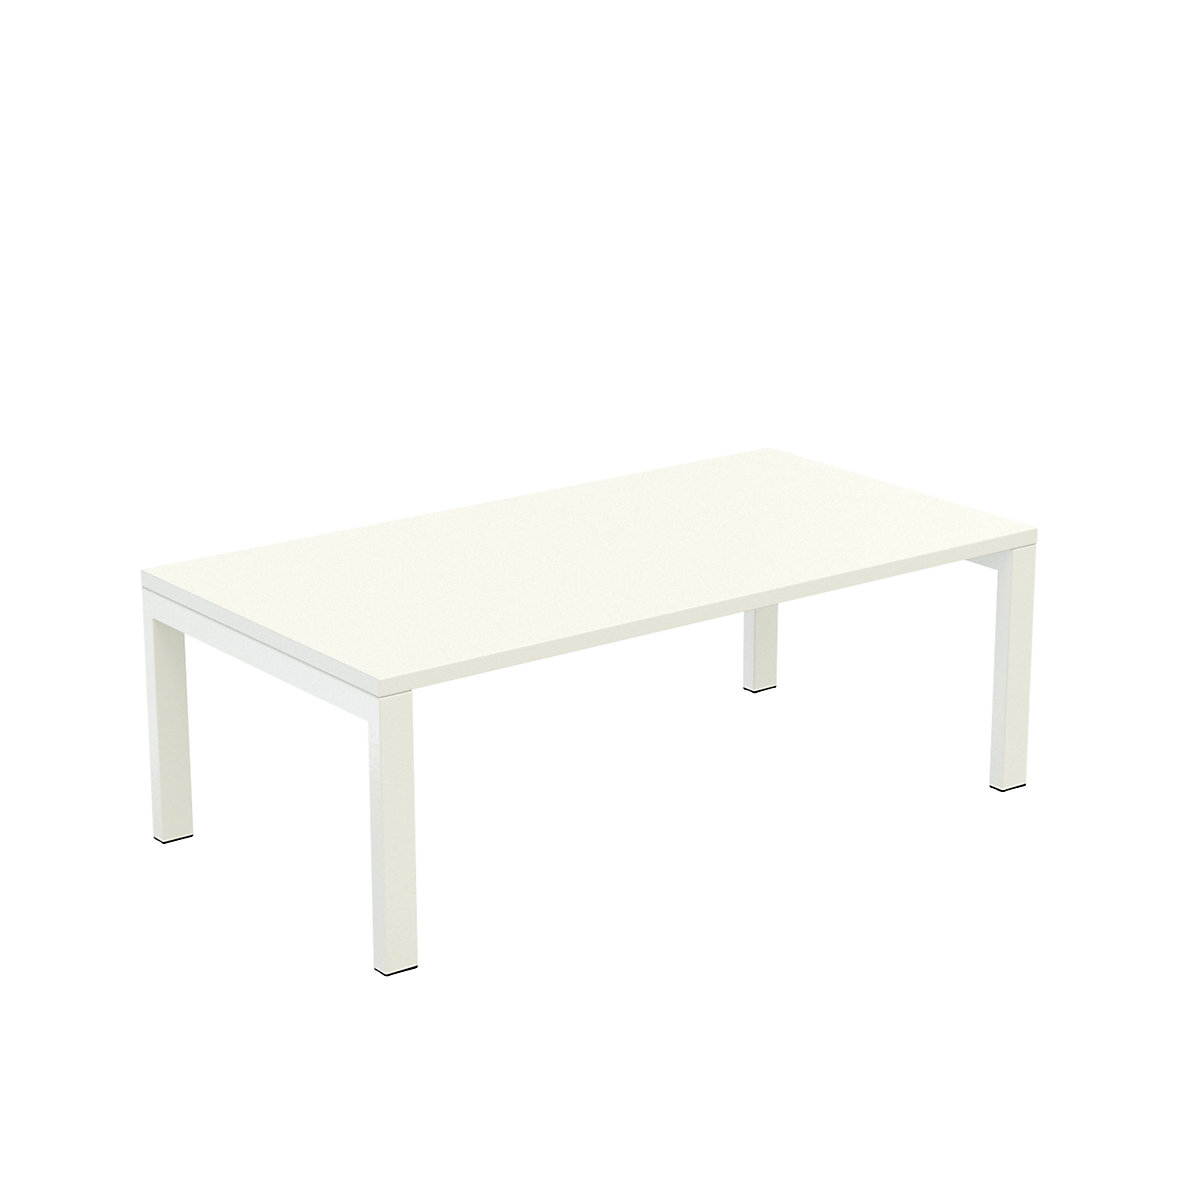 Stol za odlaganje easyDesk® – Paperflow, VxŠxD 400 x 1140 x 600 mm, u bijeloj boji-6